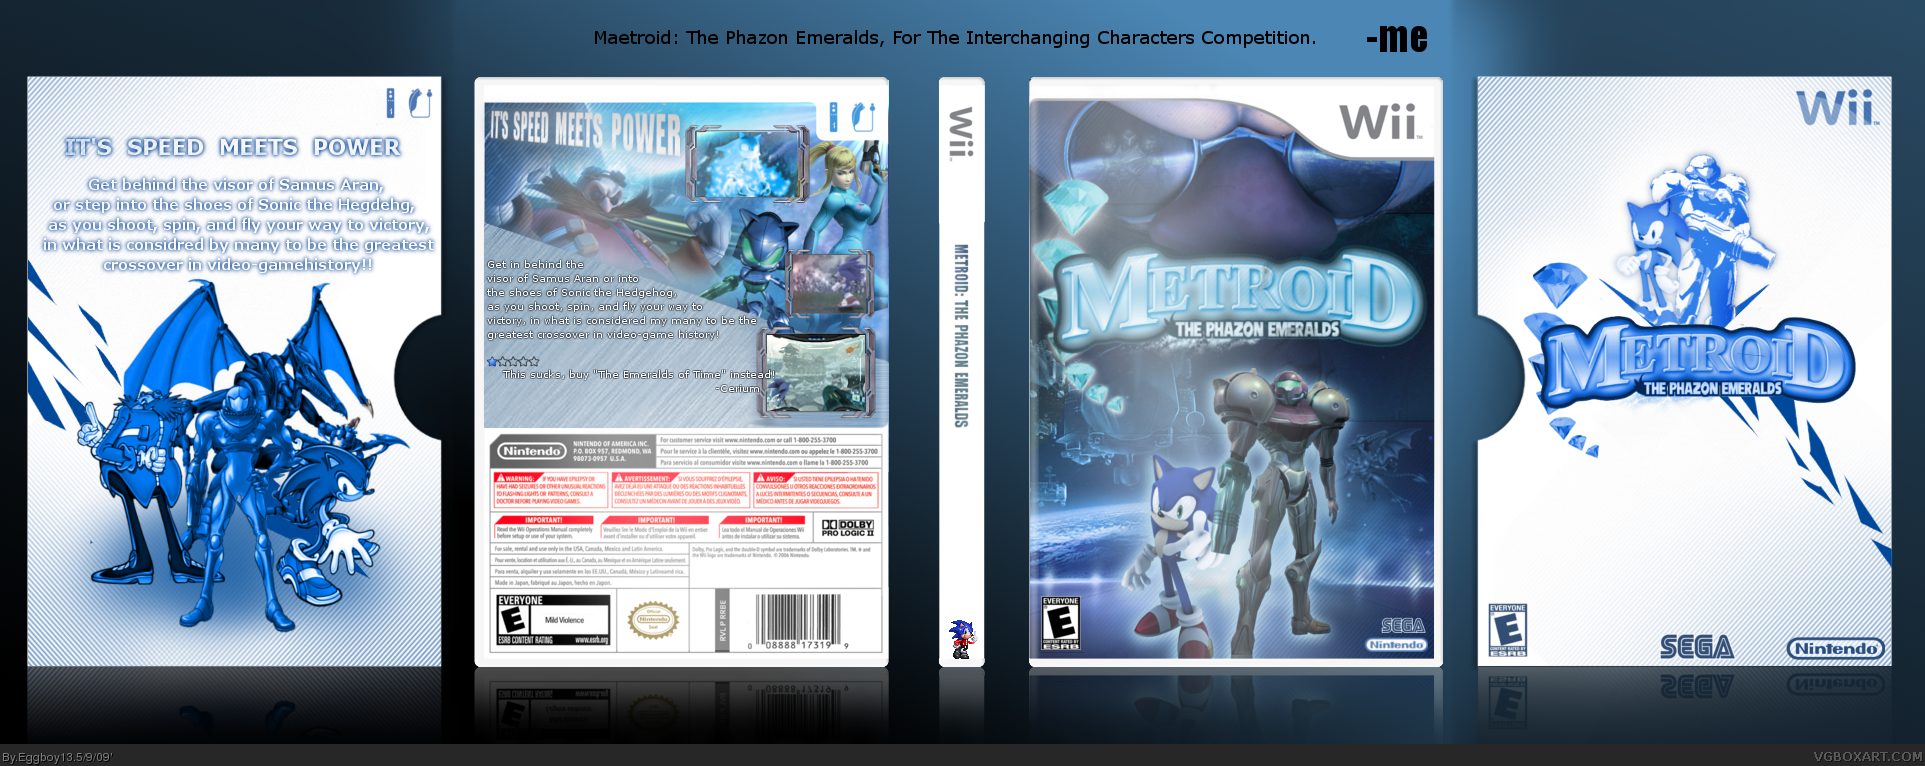 Metroid: Phazon Emeralds box cover